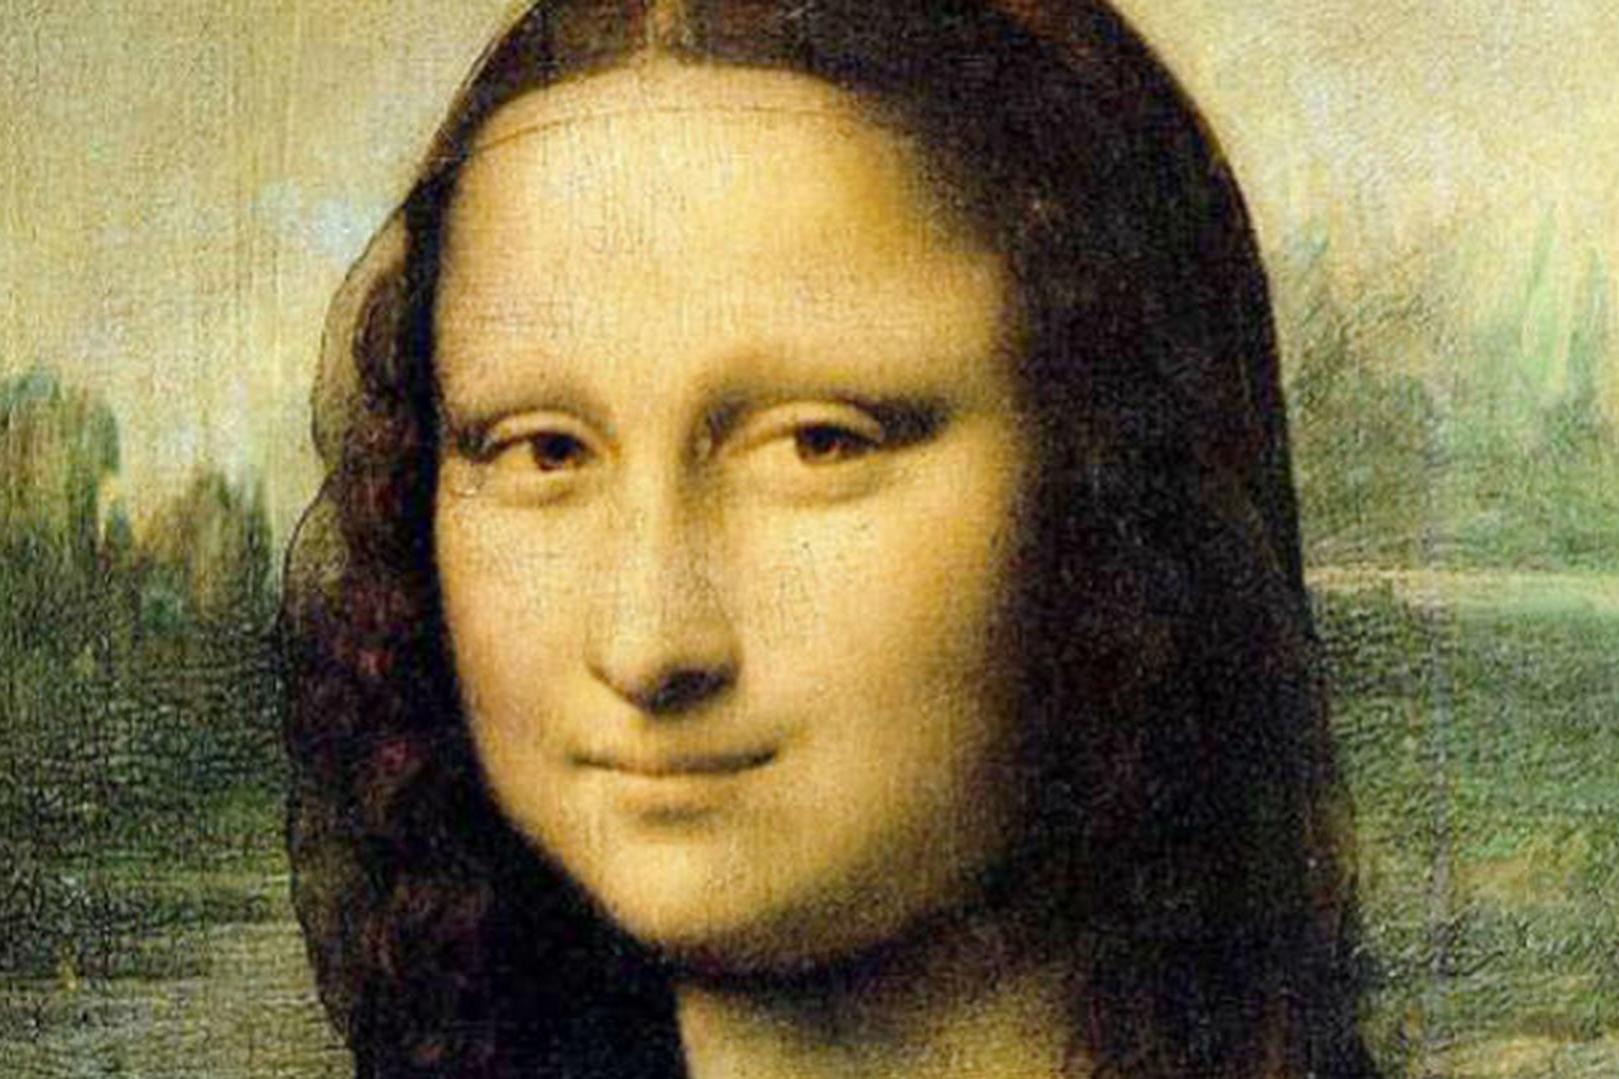 Интересно знать: Влияние Моны Лизы на искусство – 10 самых известных реплик на шедевр Да Винчи от других художников